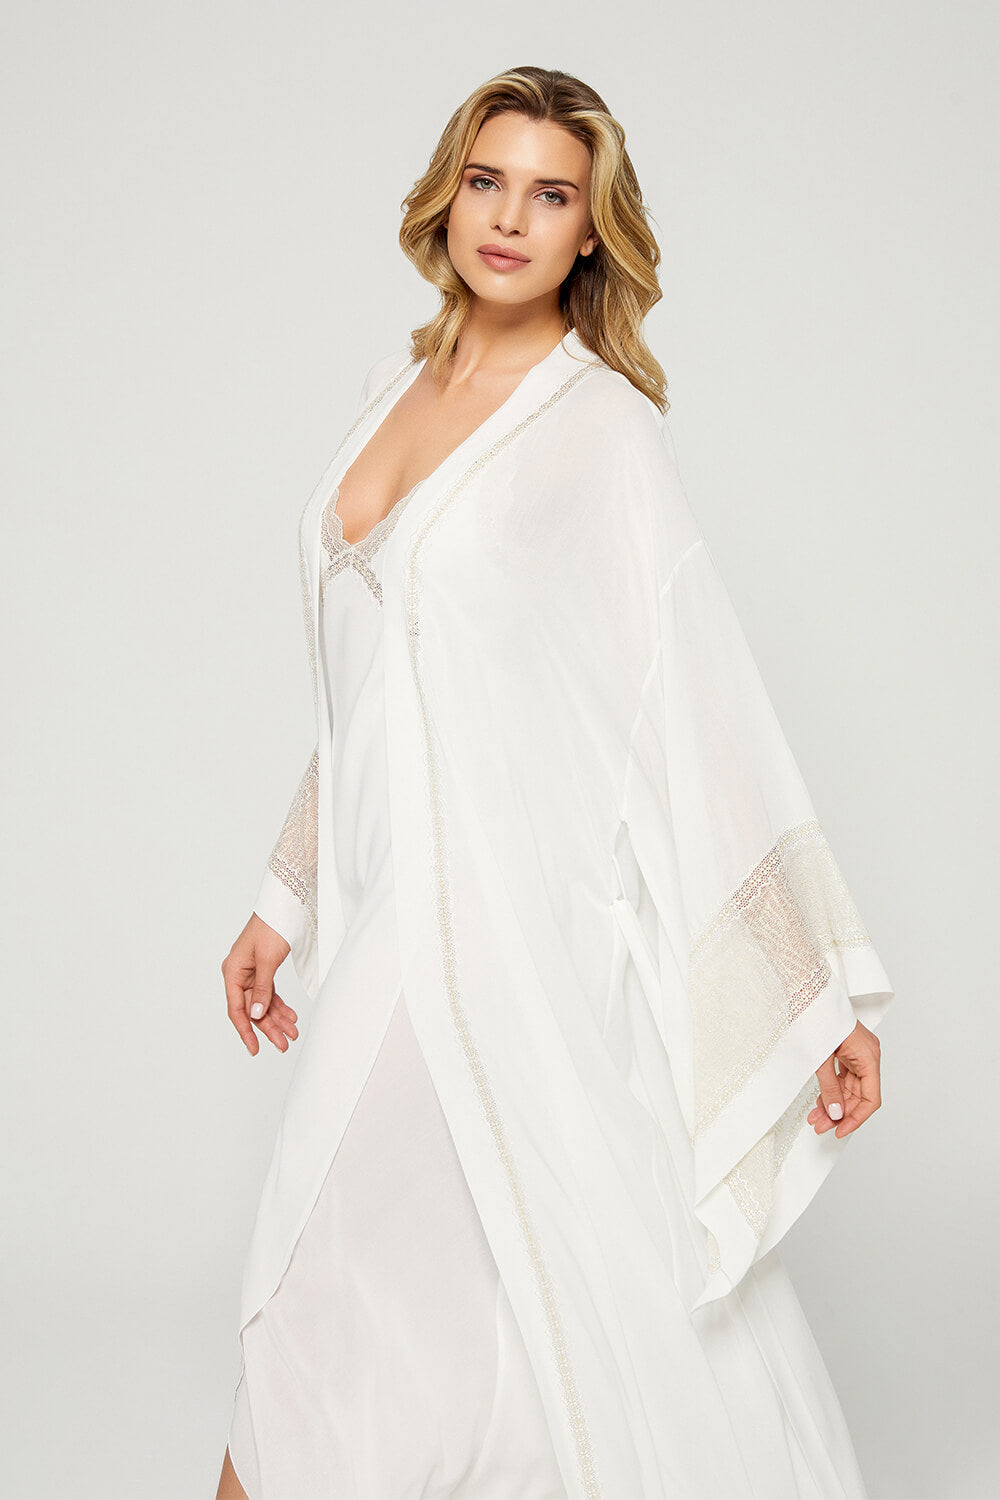 Amal - Trimmed Silk Chiffon Kimono Set - Gold Lace on Off White